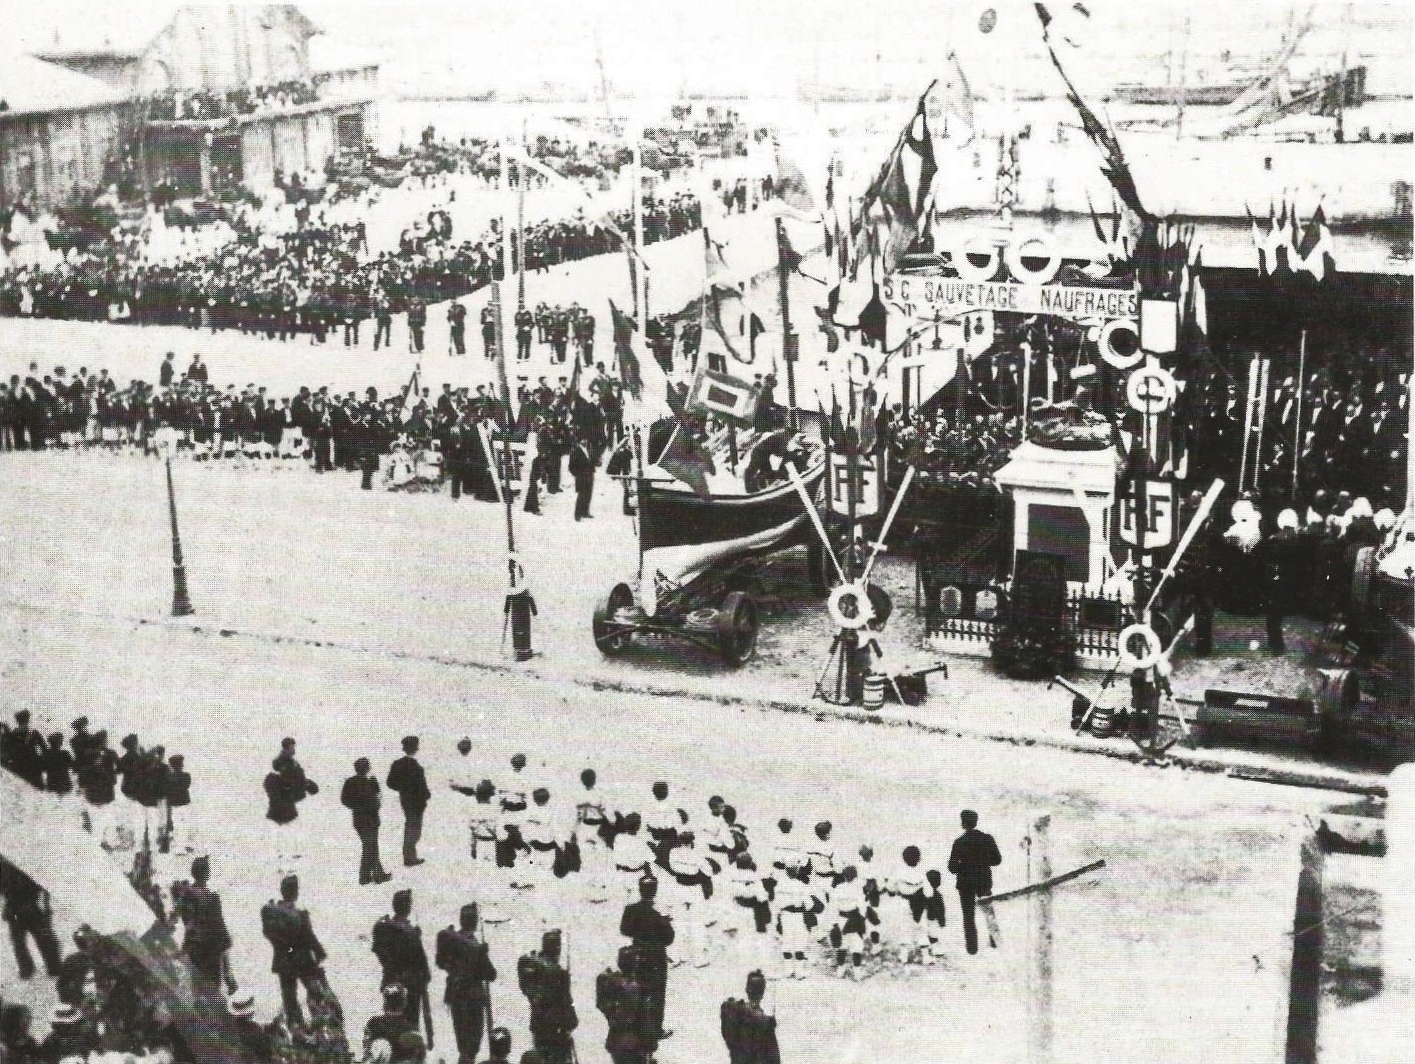 Calais inauguration du monument des sauveteurs 11 sept 1899